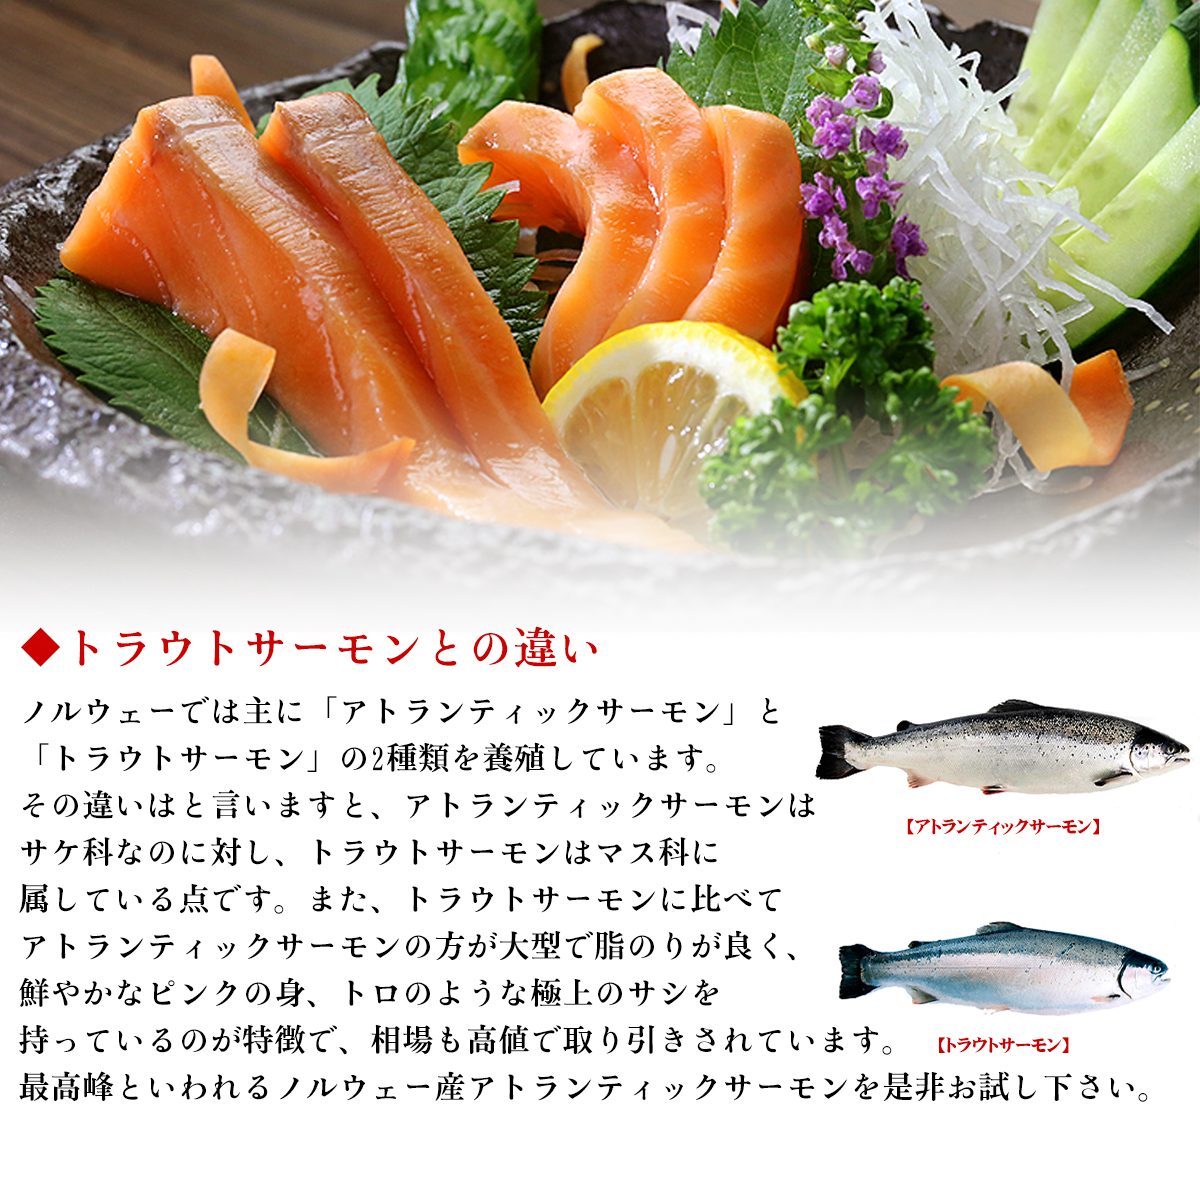 [ есть перевод ] Atlantic salmon - las порез . сбрасывание вдоволь 500g salmon noru way производство размер не комплект сырой еда возможно . sashimi жирный тунец 